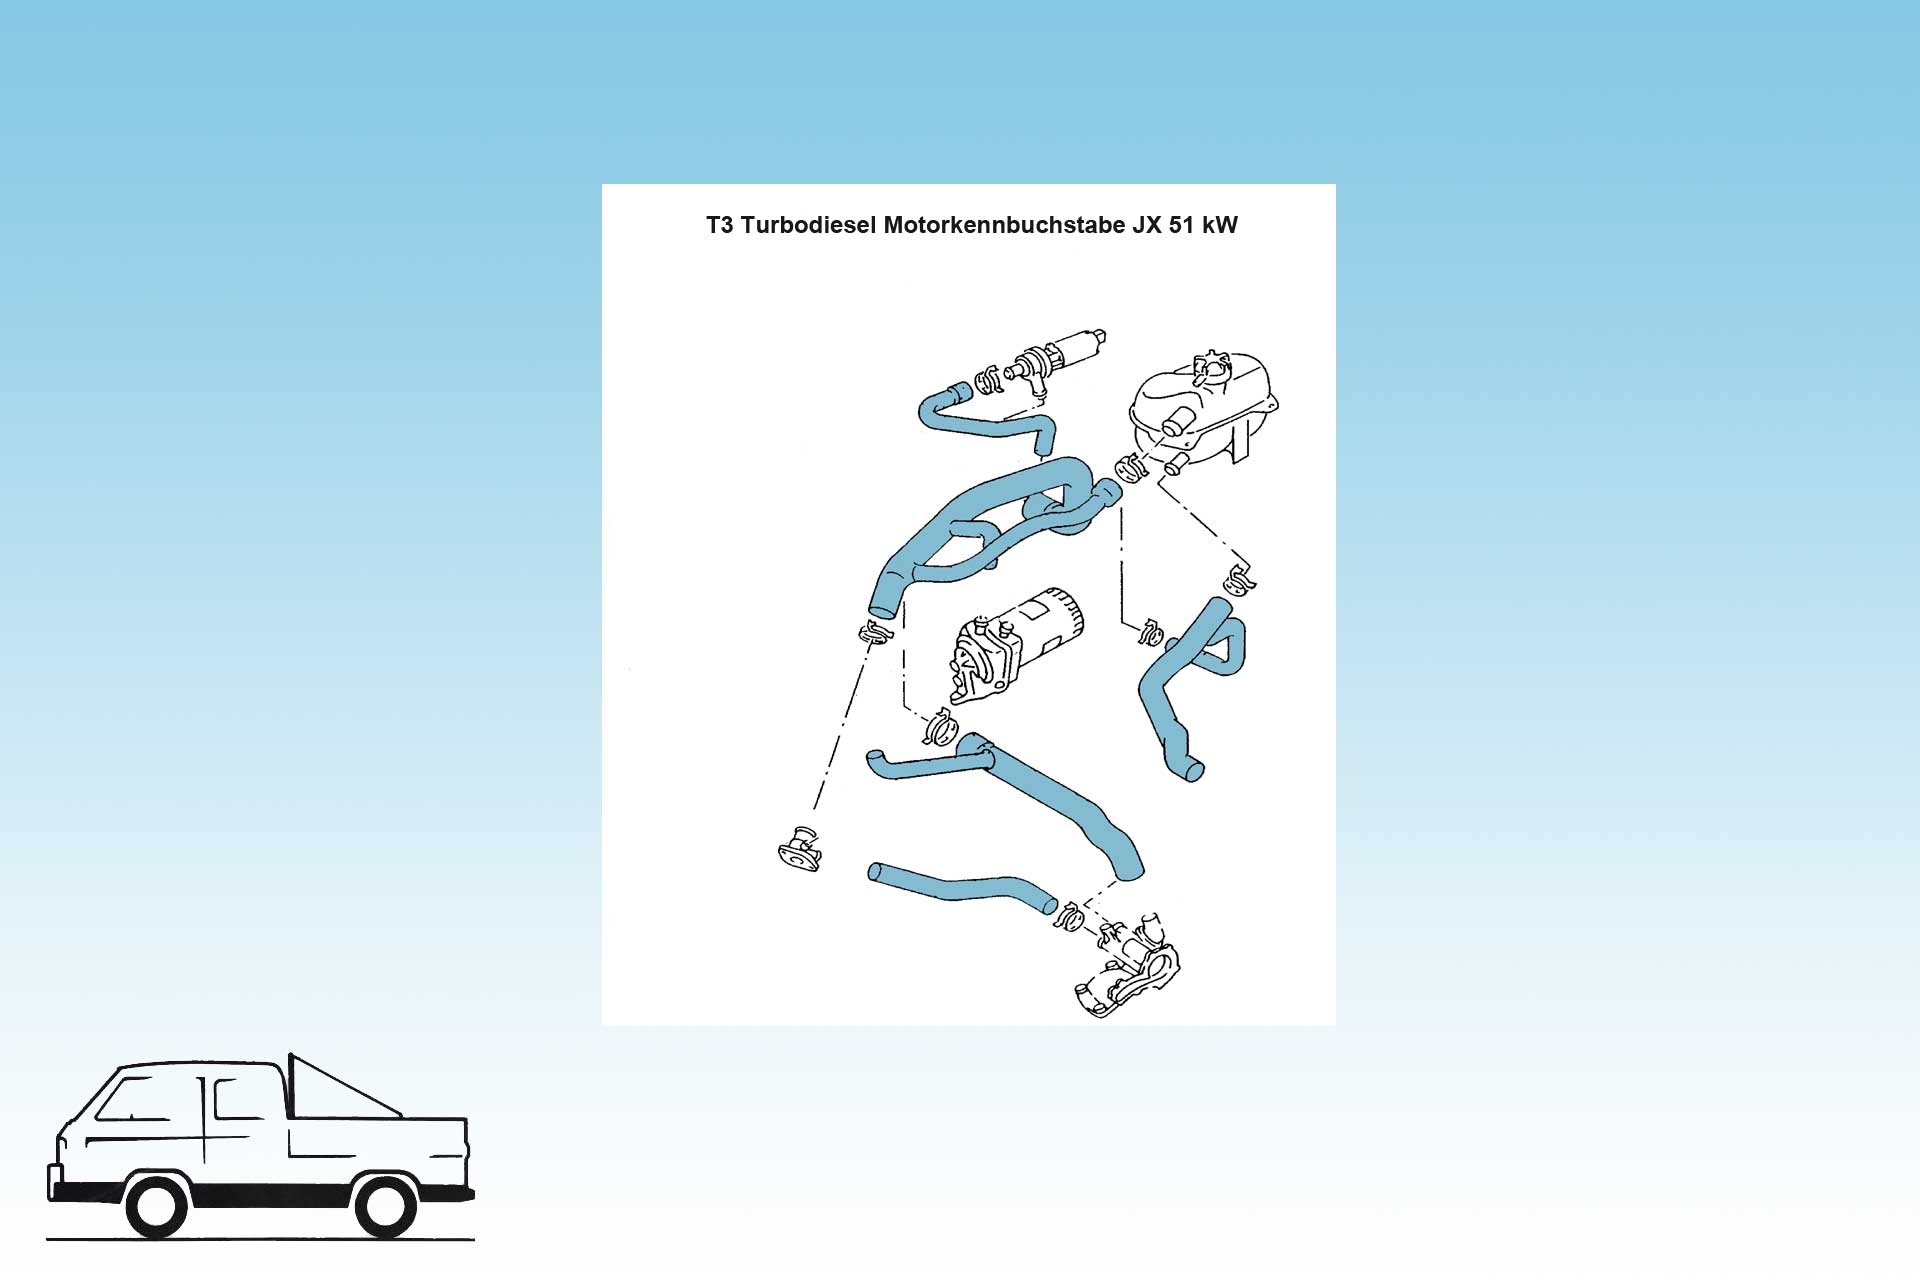 1 Satz Wasserschläuche T3 Bus Turbodiesel, Diesel, Motor